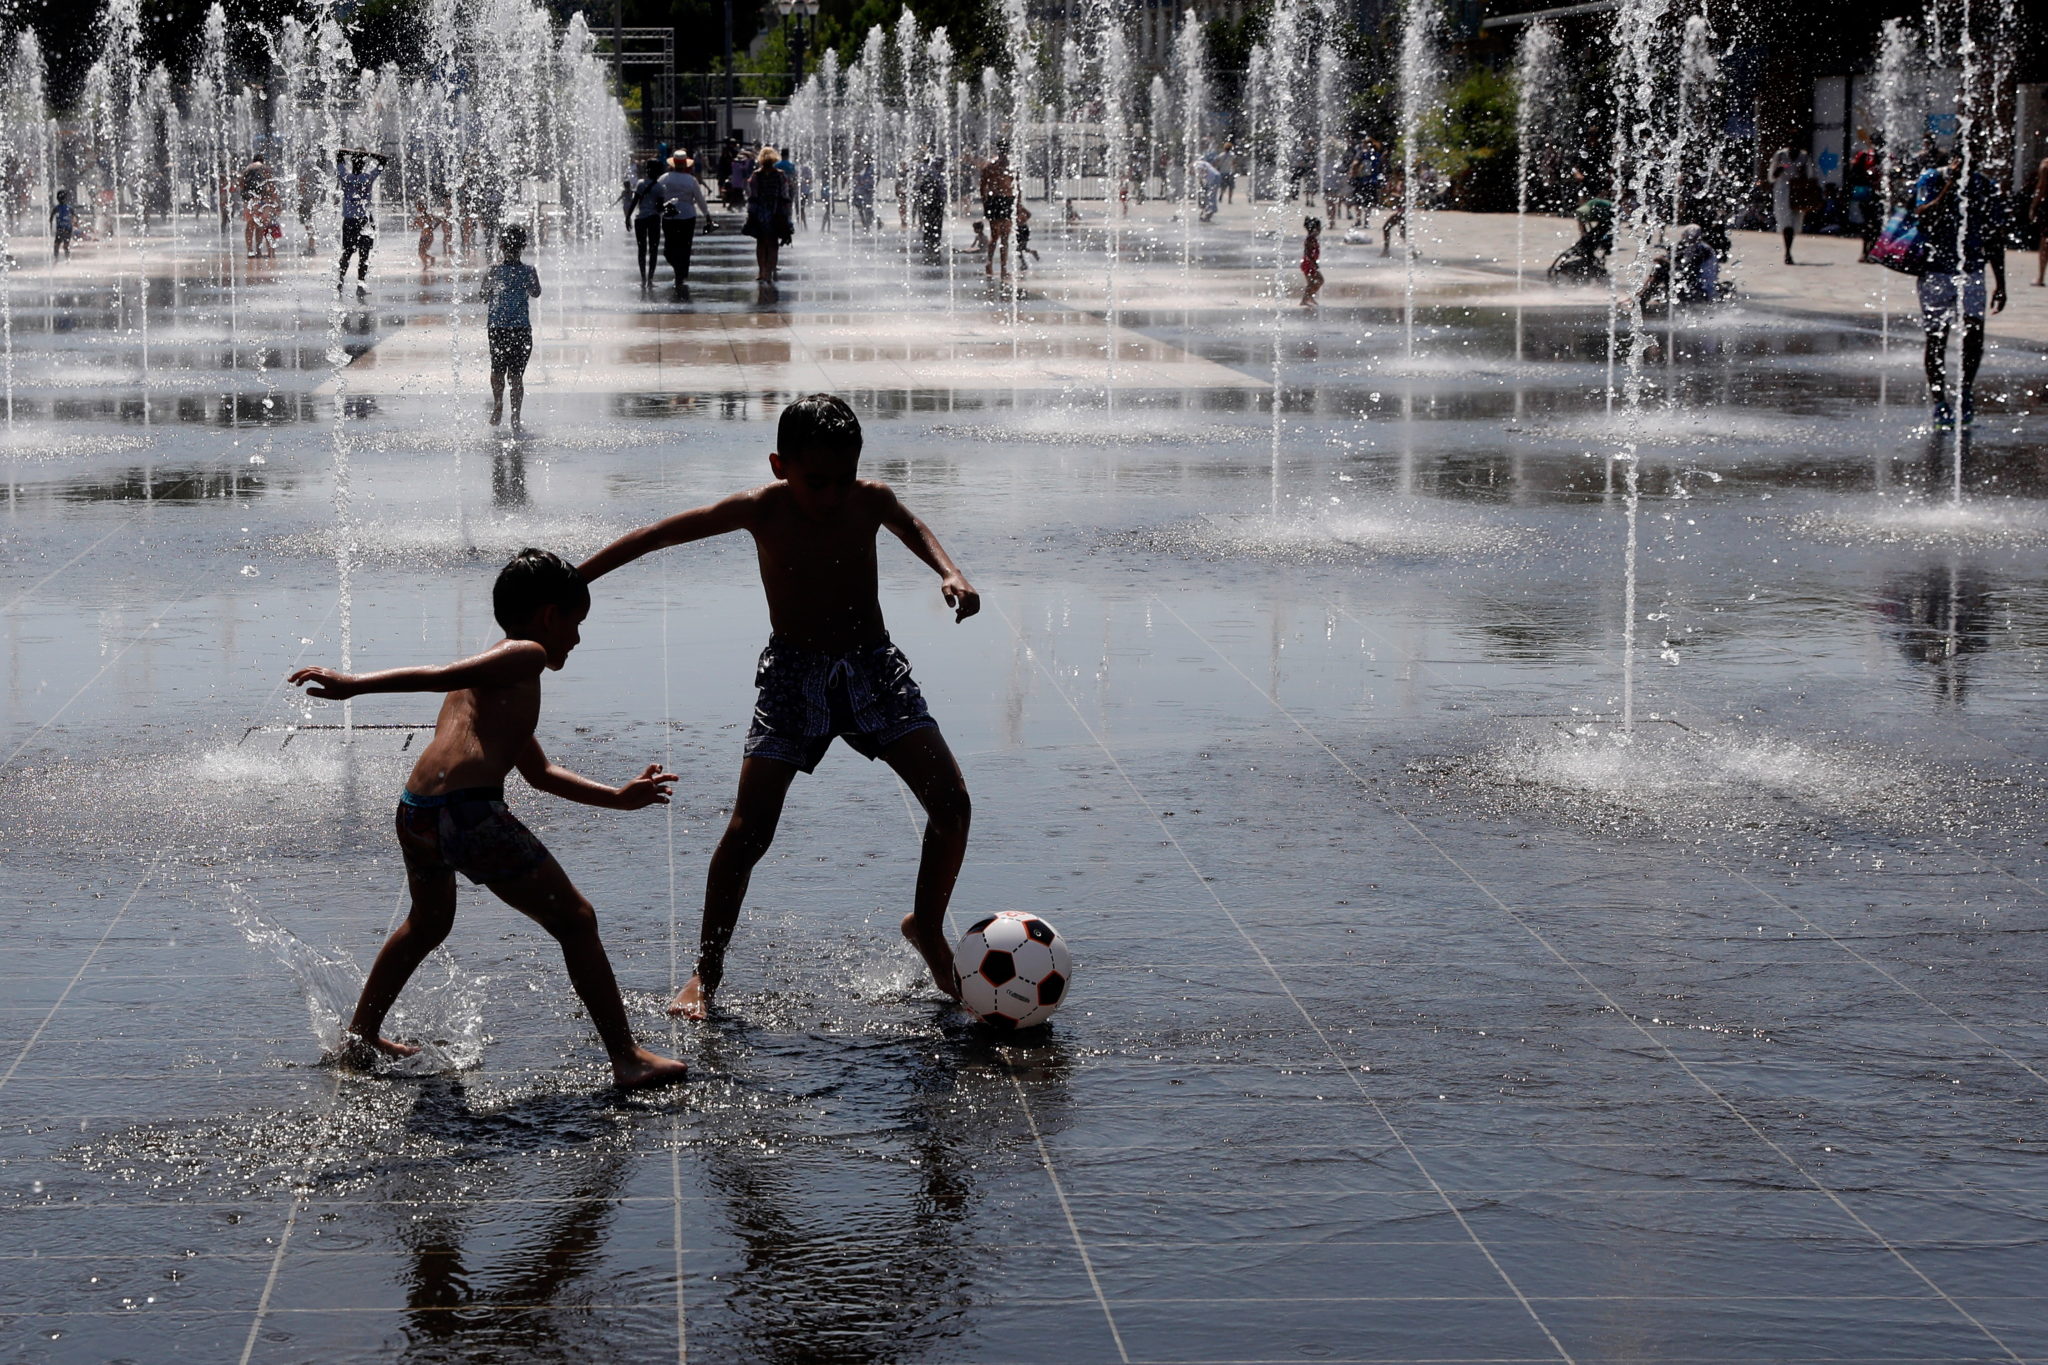 Nicea, Francja: wysokie temperatury we Francji kończą się też tragicznie, do tej pory z powodu przegrzania orgamizmu zmary  co najmniej 4 osoby, fot. SEBASTIEN NOGIER, PAP/EPA 